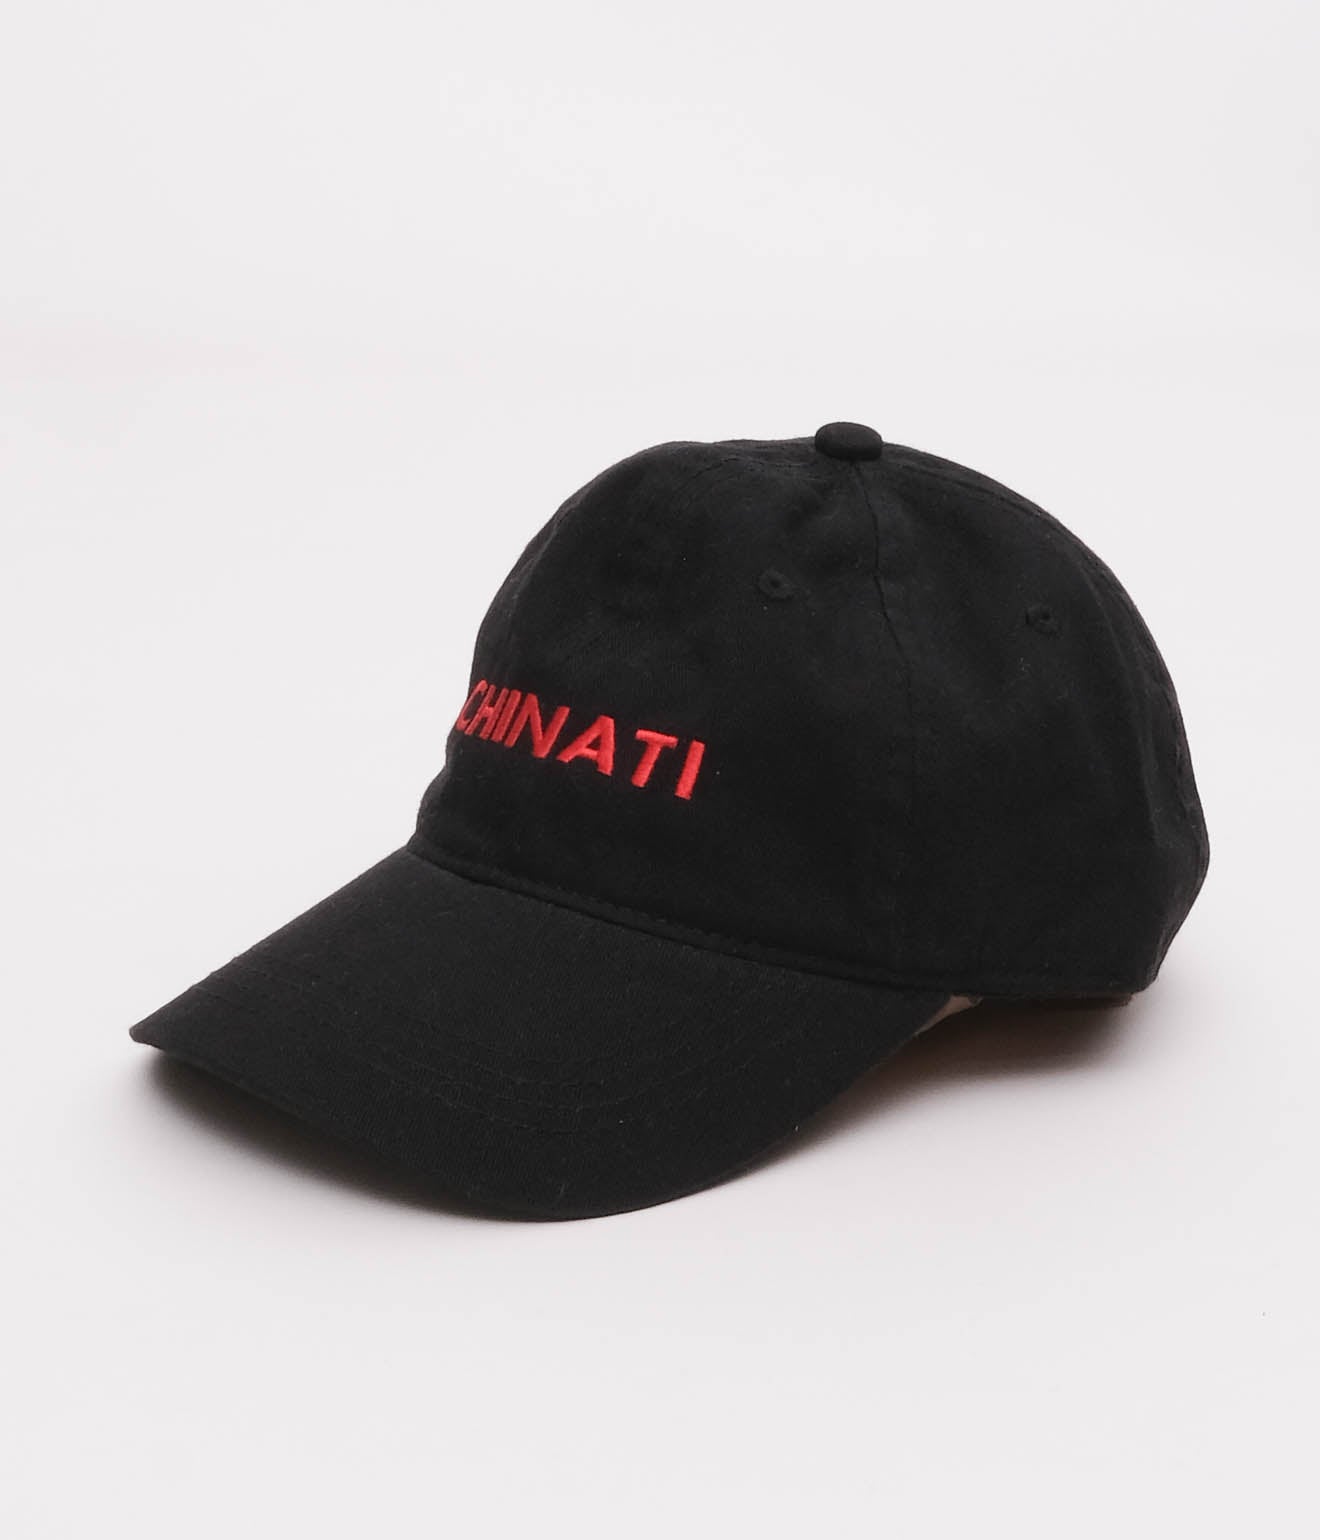 Souvenir Goods "CHINATI CAP" (Black)